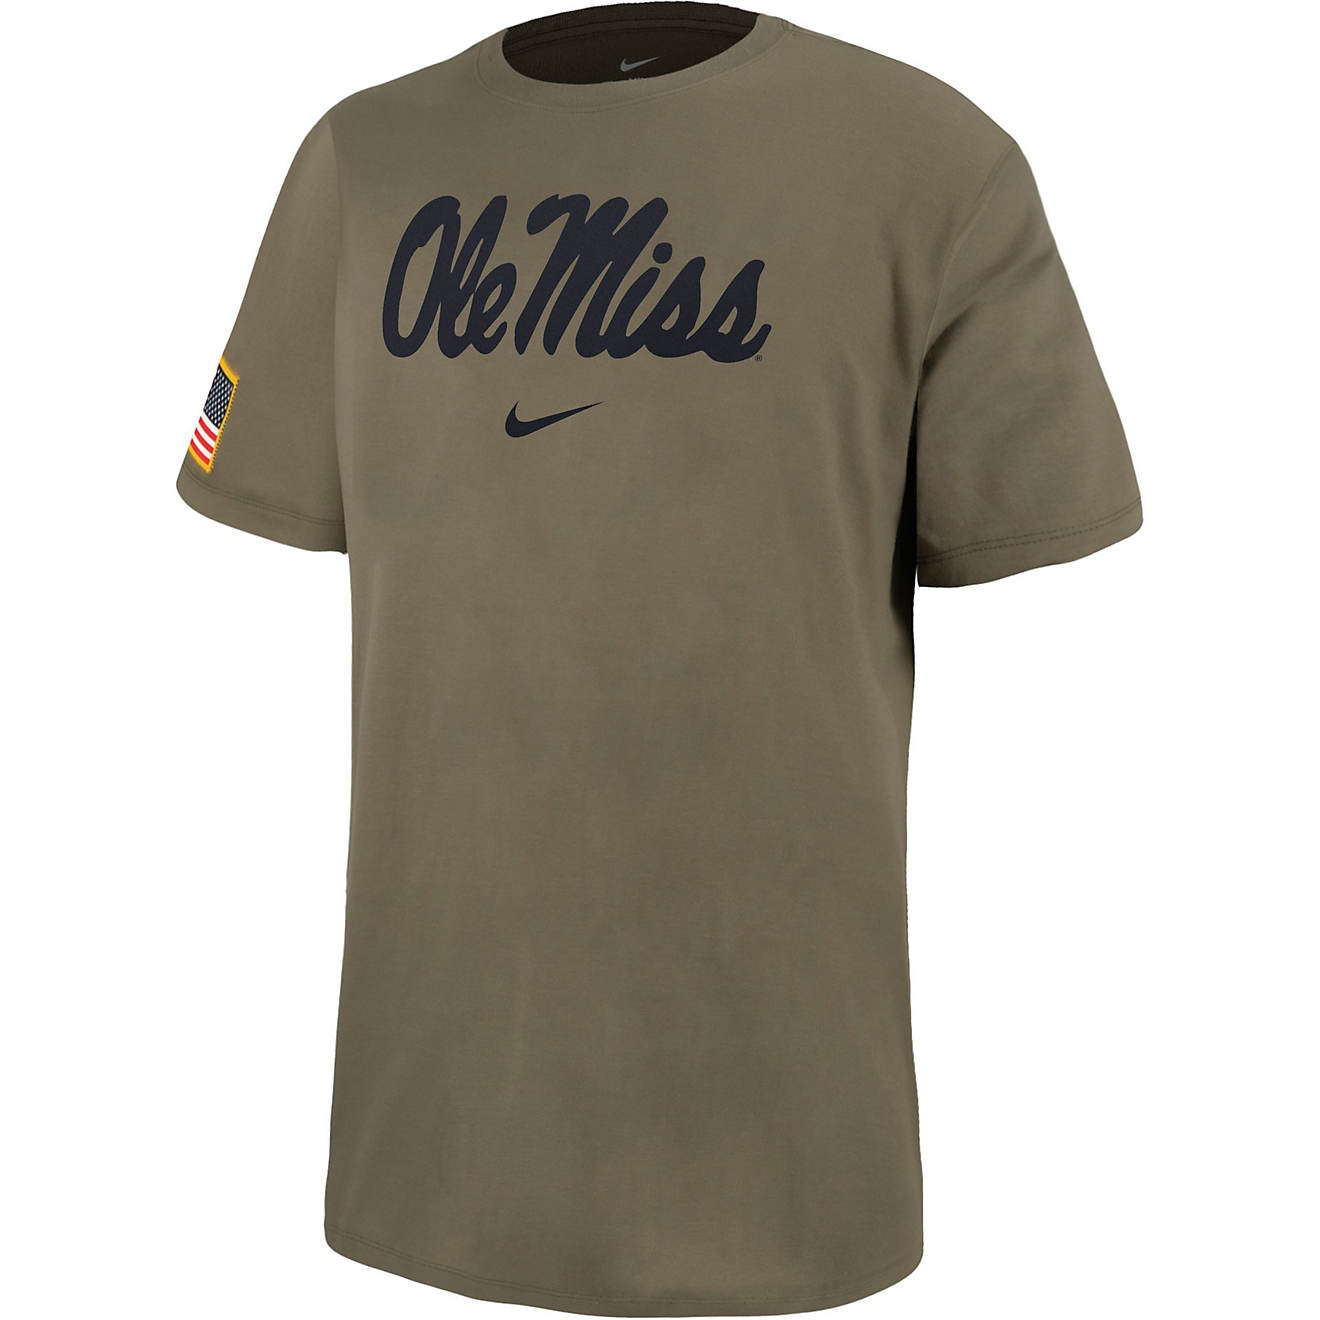 Nike Men's University of Mississippi Sideline Core Military T-shirt ...